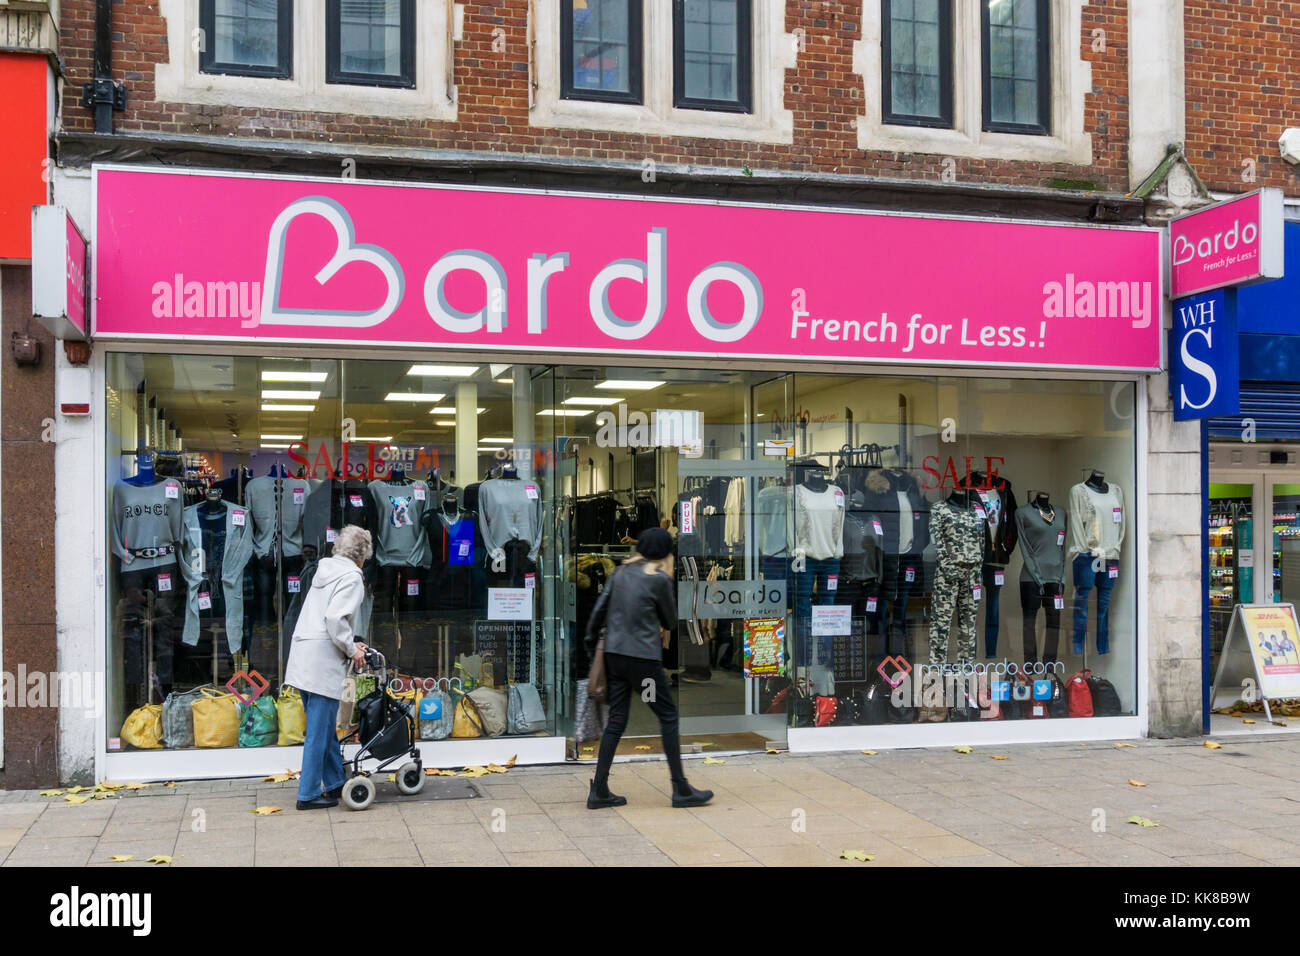 El Bardo tienda de ropa de mujer en Croydon anuncia francés para menos.! Foto de stock